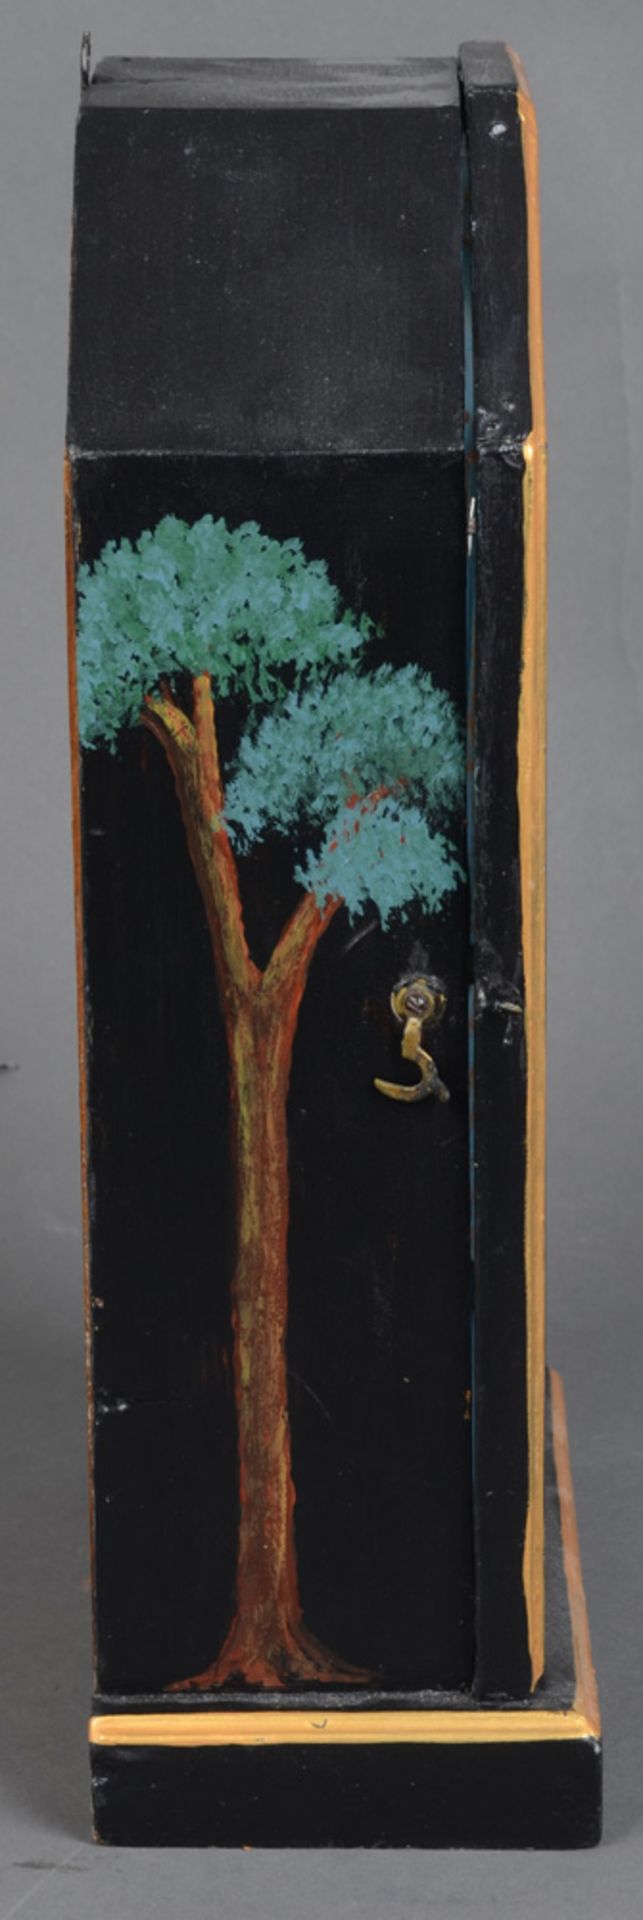 Tischuhr. Deutsch. Holzgehäuse, ebonisiert, teilw. farbig bemalt, mit Goldrand. Ziffernblatt mit - Bild 2 aus 2